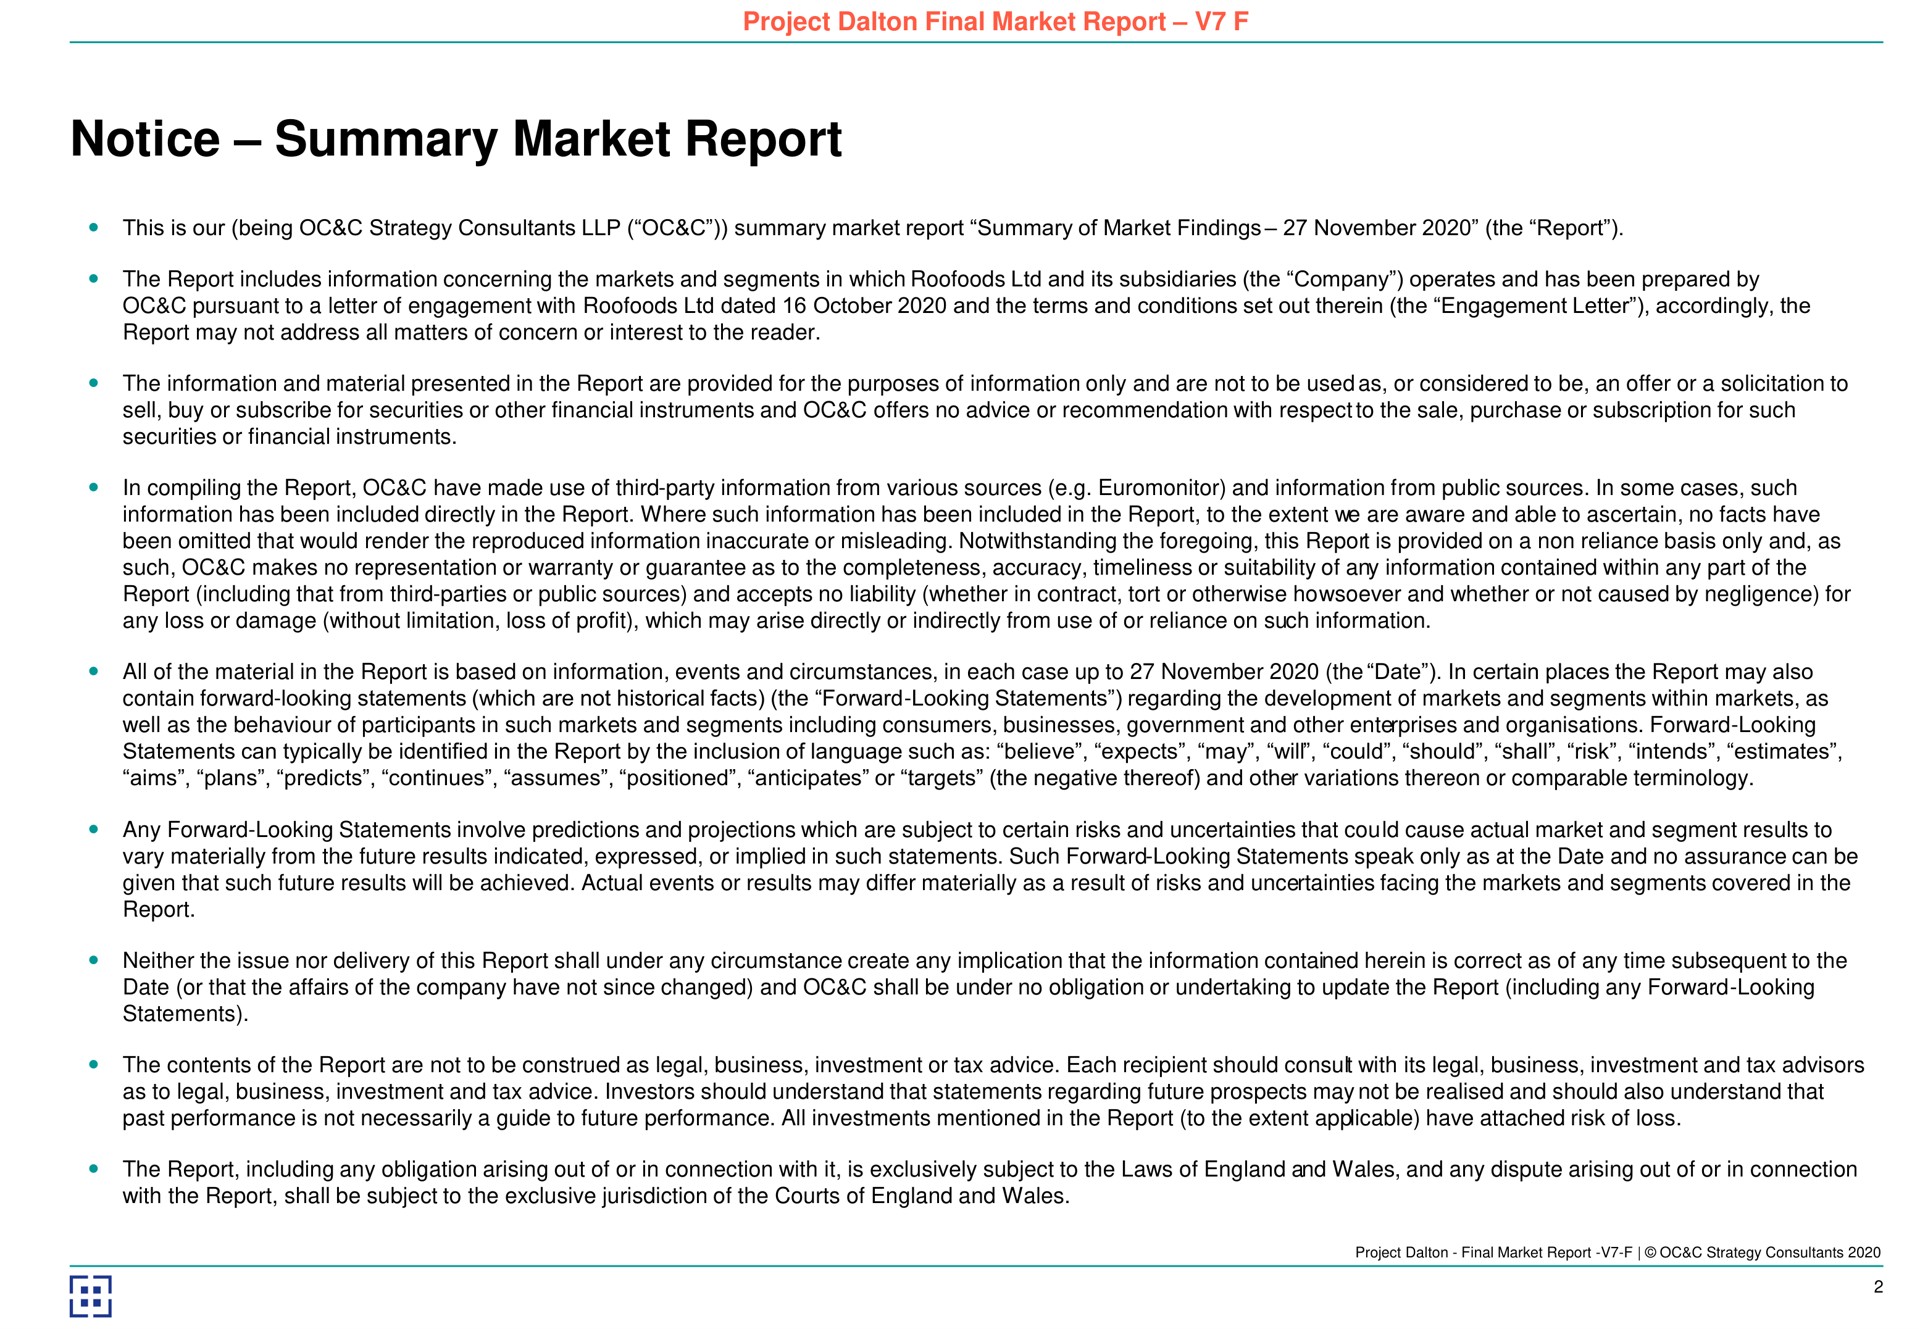 notice summary market report | Deliveroo